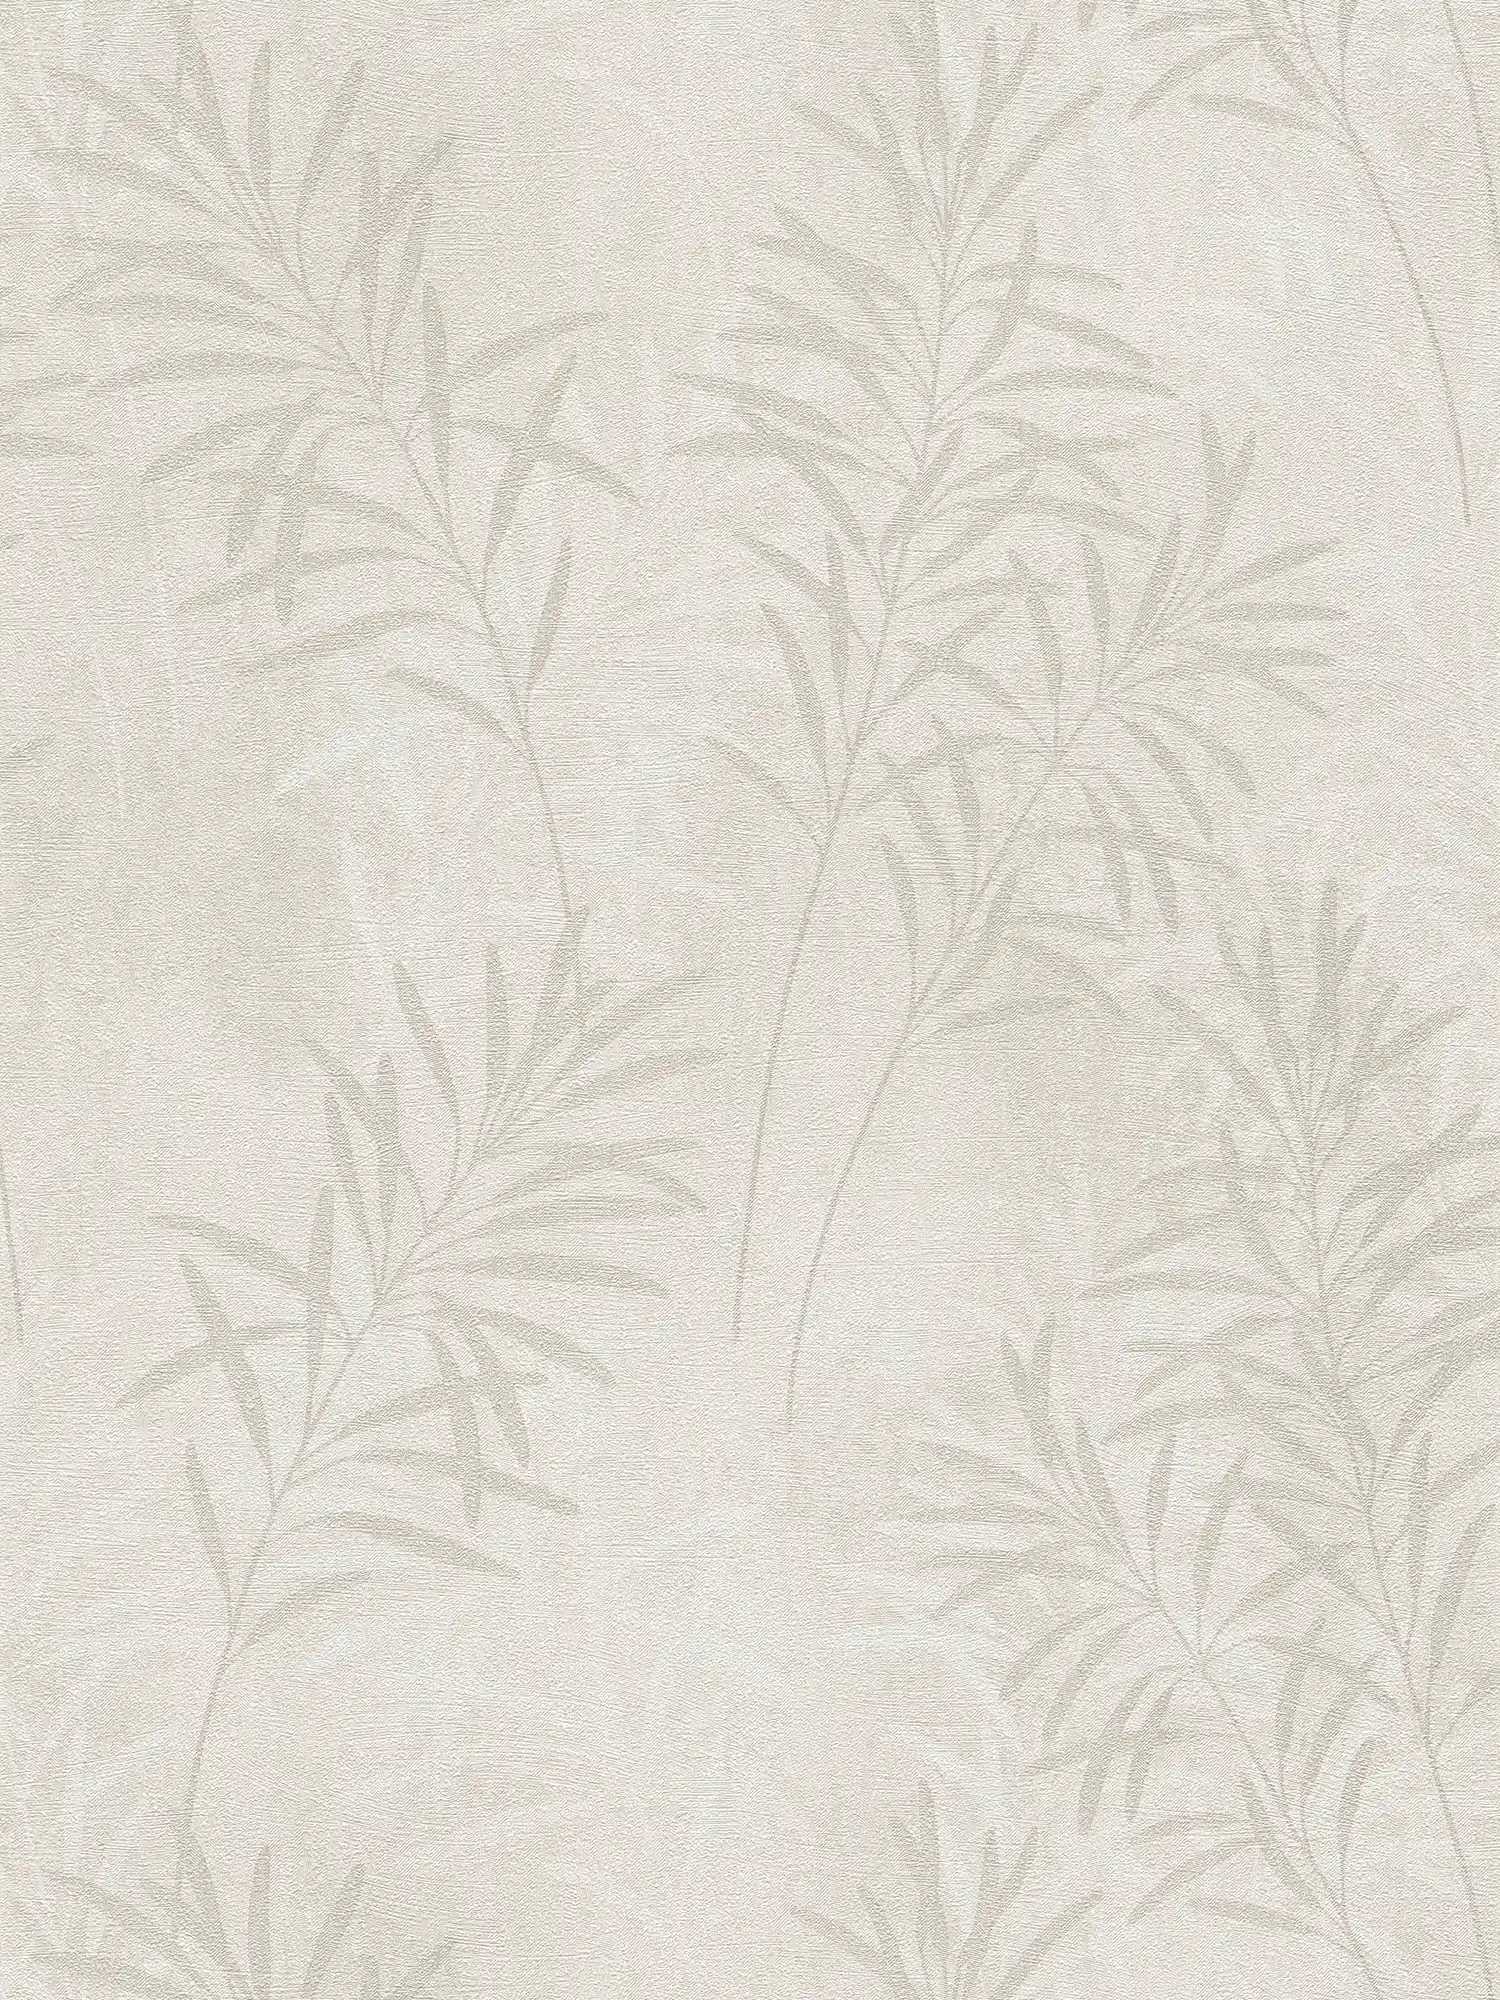             Papel pintado no tejido de estilo escandinavo con hierbas florales - crema, beige, metálico
        